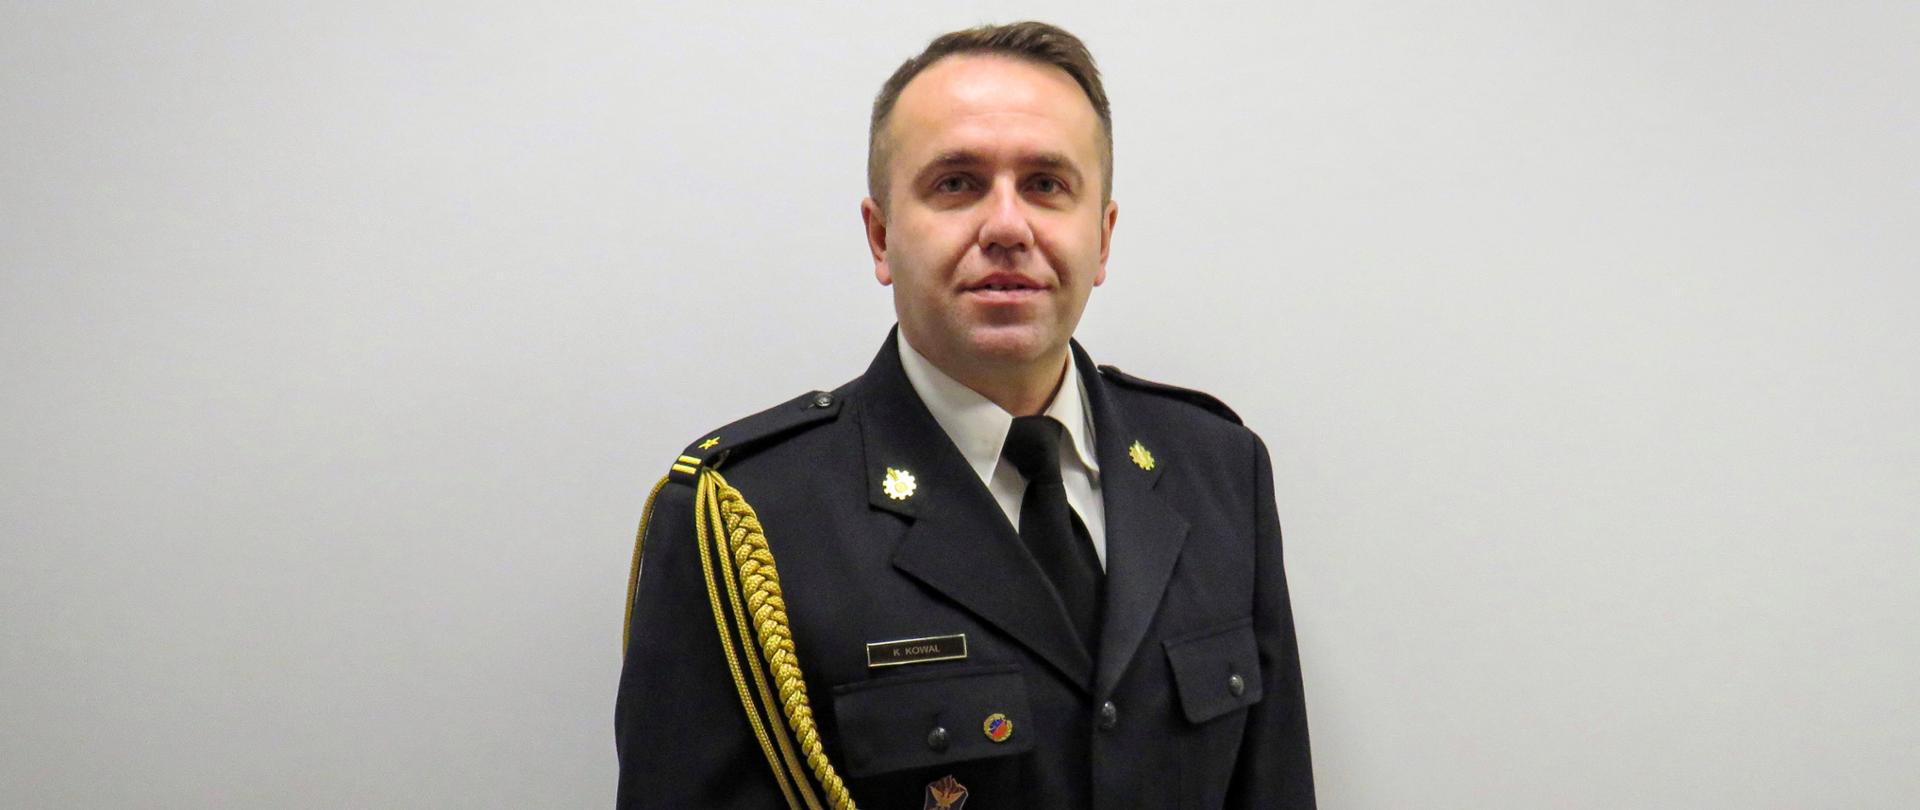 Na zdjęciu portretowym znajduje się zastępca komendanta powiatowego psp - młodszy brygadier Krystian Kowal, który jest ubrany w mundur galowy oraz białą koszulę.